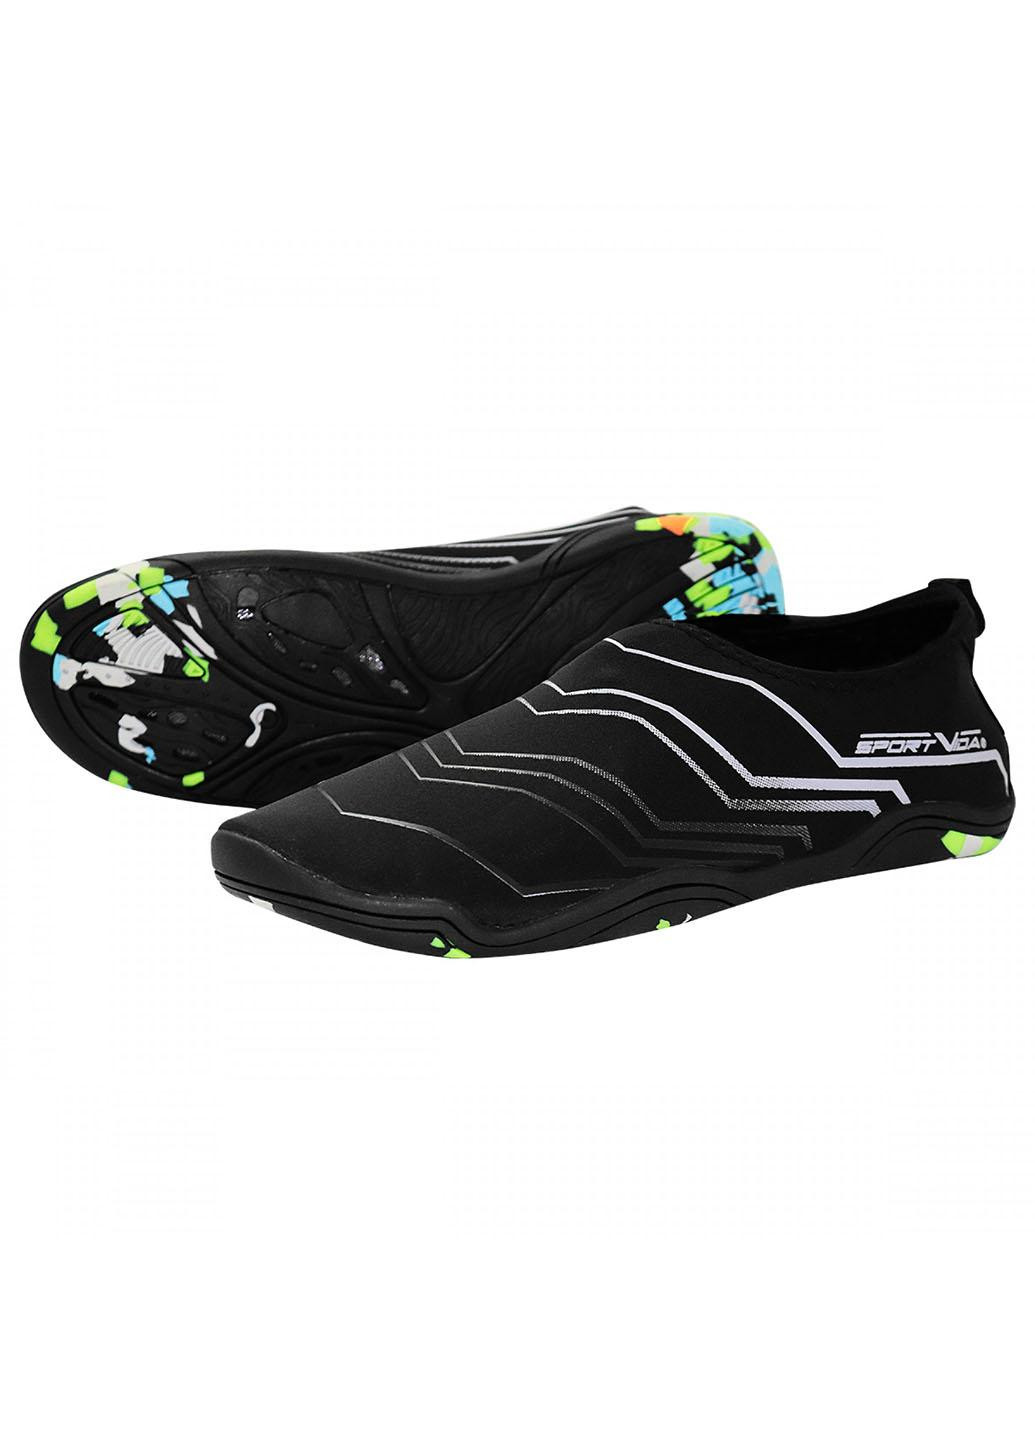 Взуття для пляжу і коралів (аквашузи) SV-GY0006-R41 Size 41 Black/Grey SportVida (258486773)